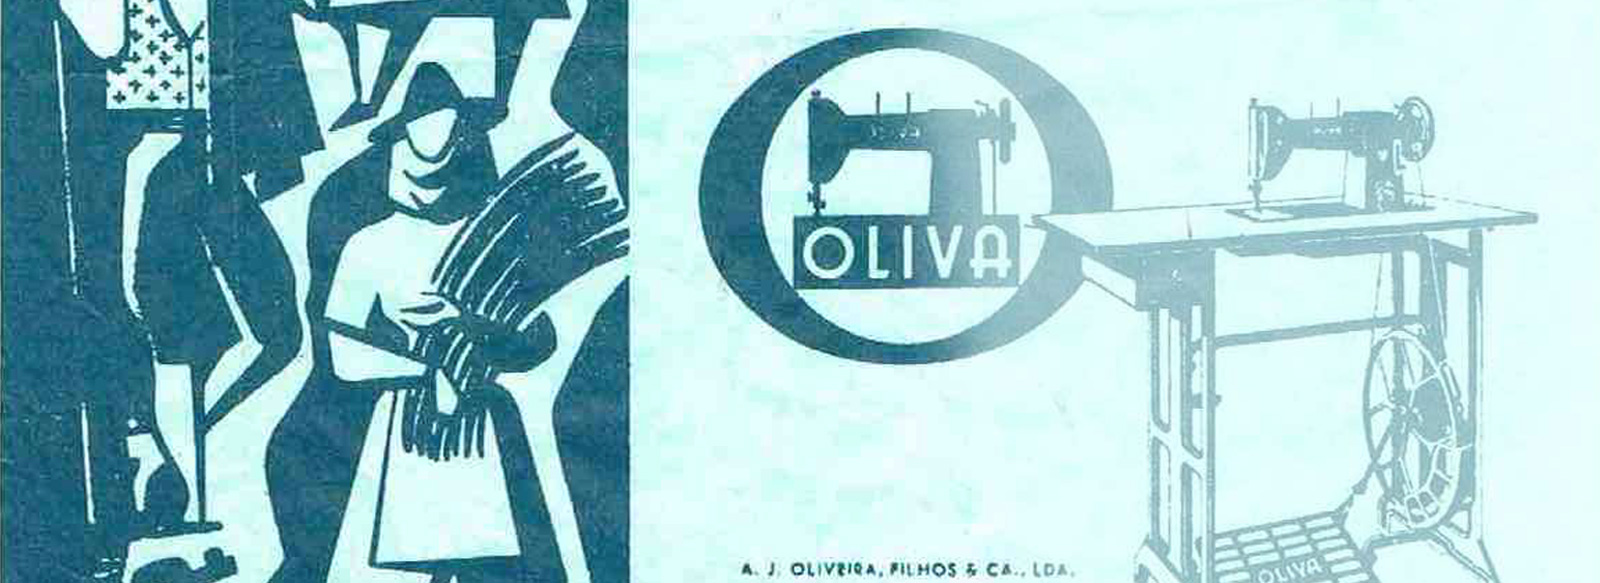 Folheto publicitário da máquina de costura da Oliva